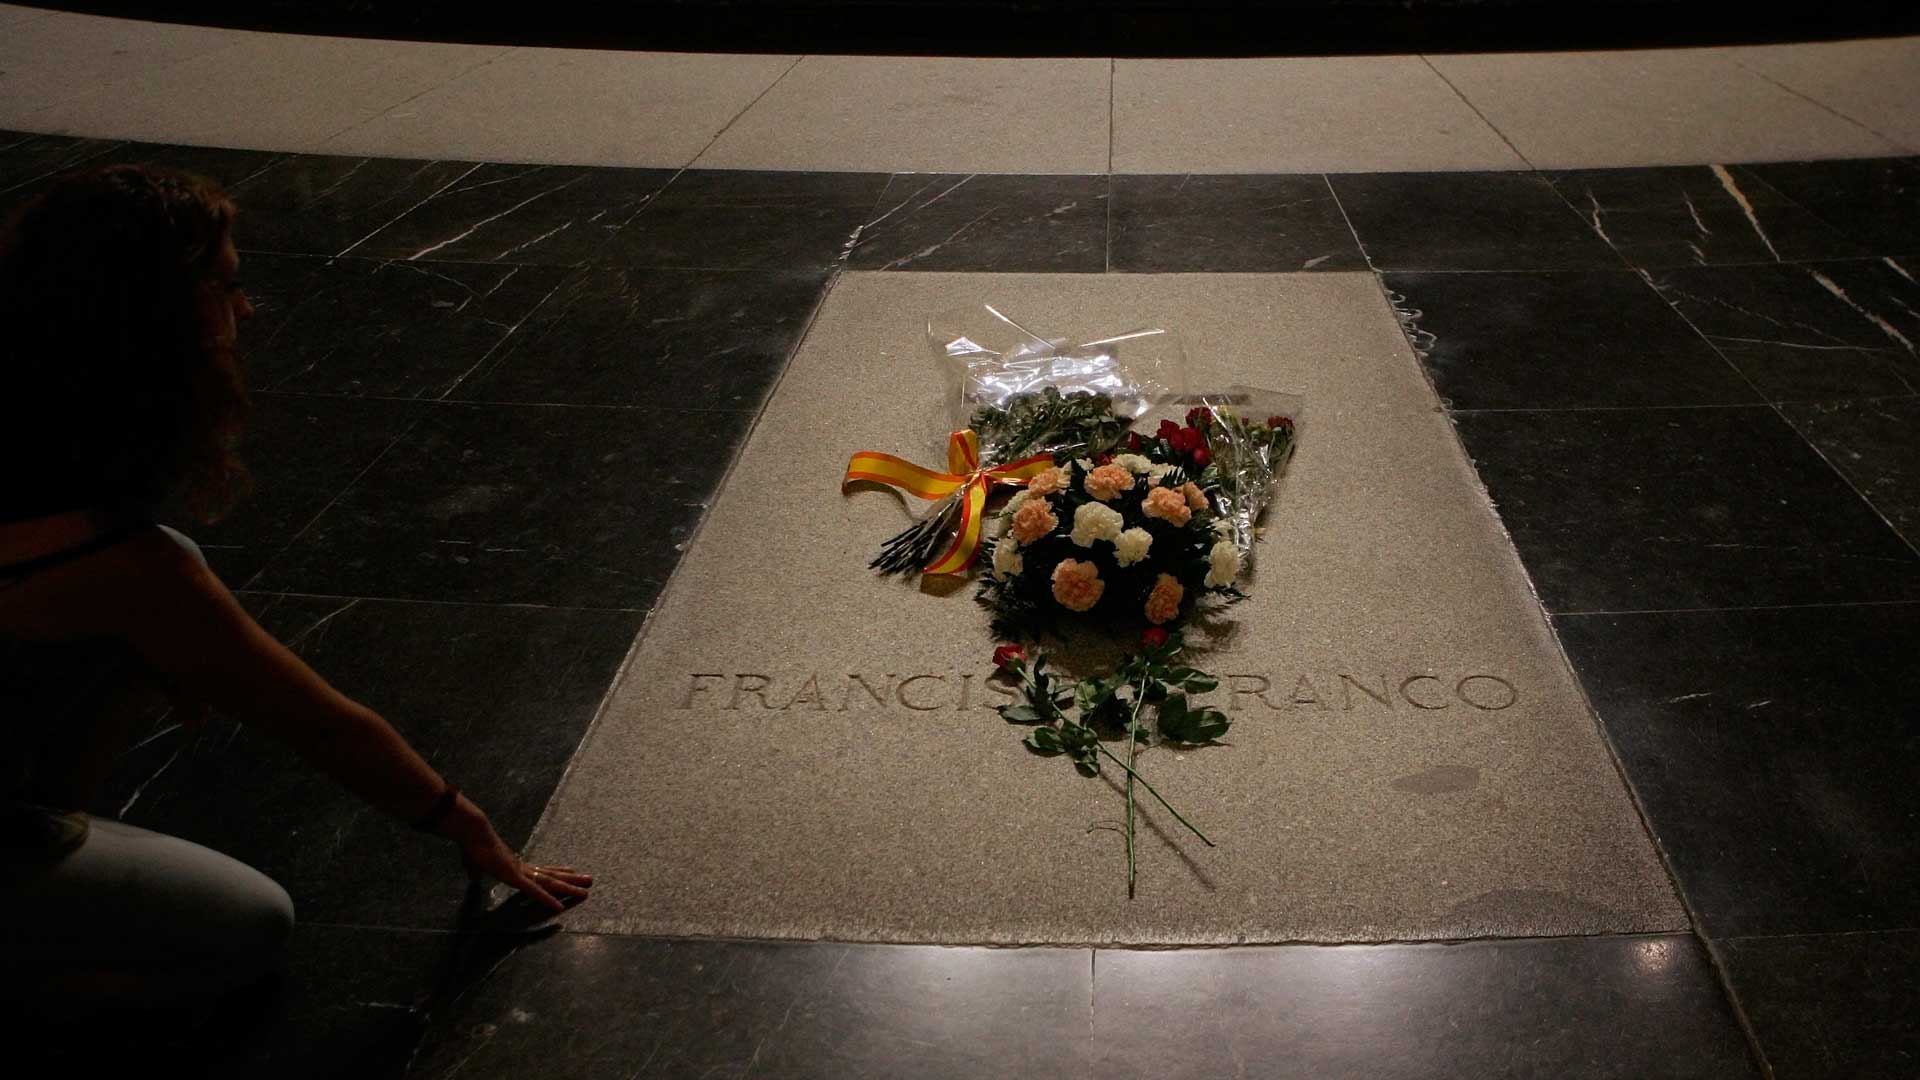 5 claves sobre la exhumación de Franco